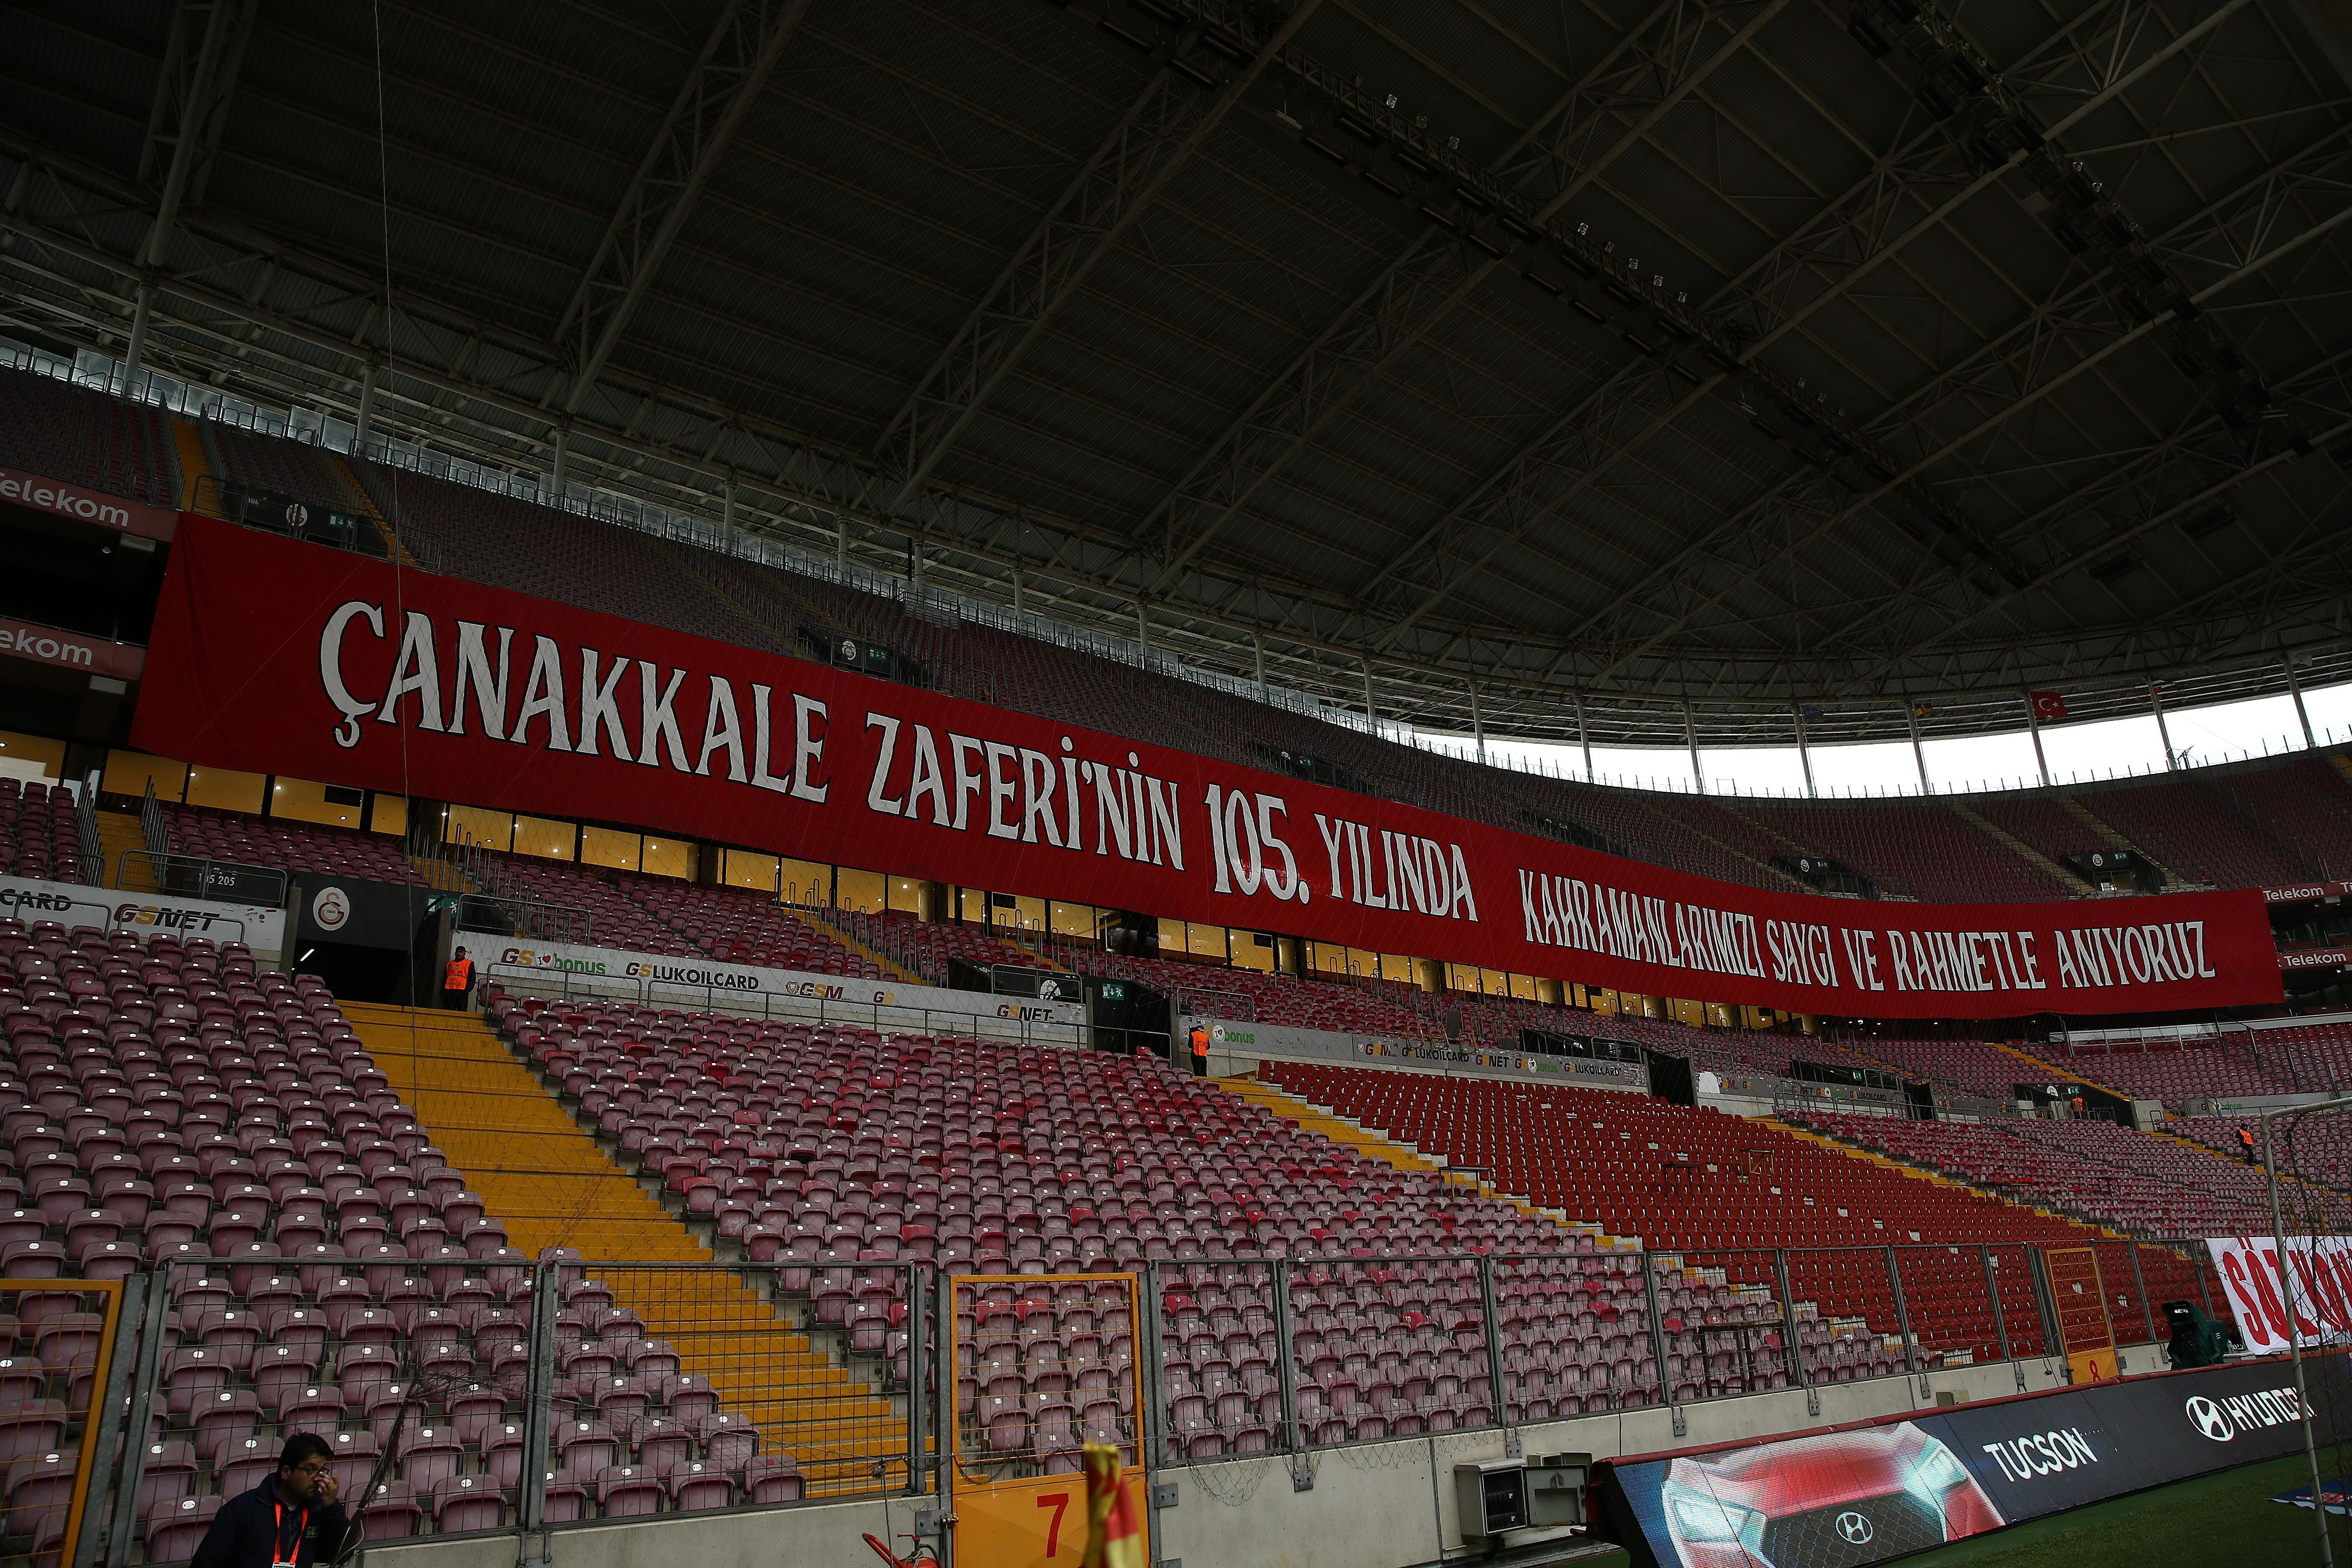 Galatasaray taraftarlarından Çanakkale pankartları